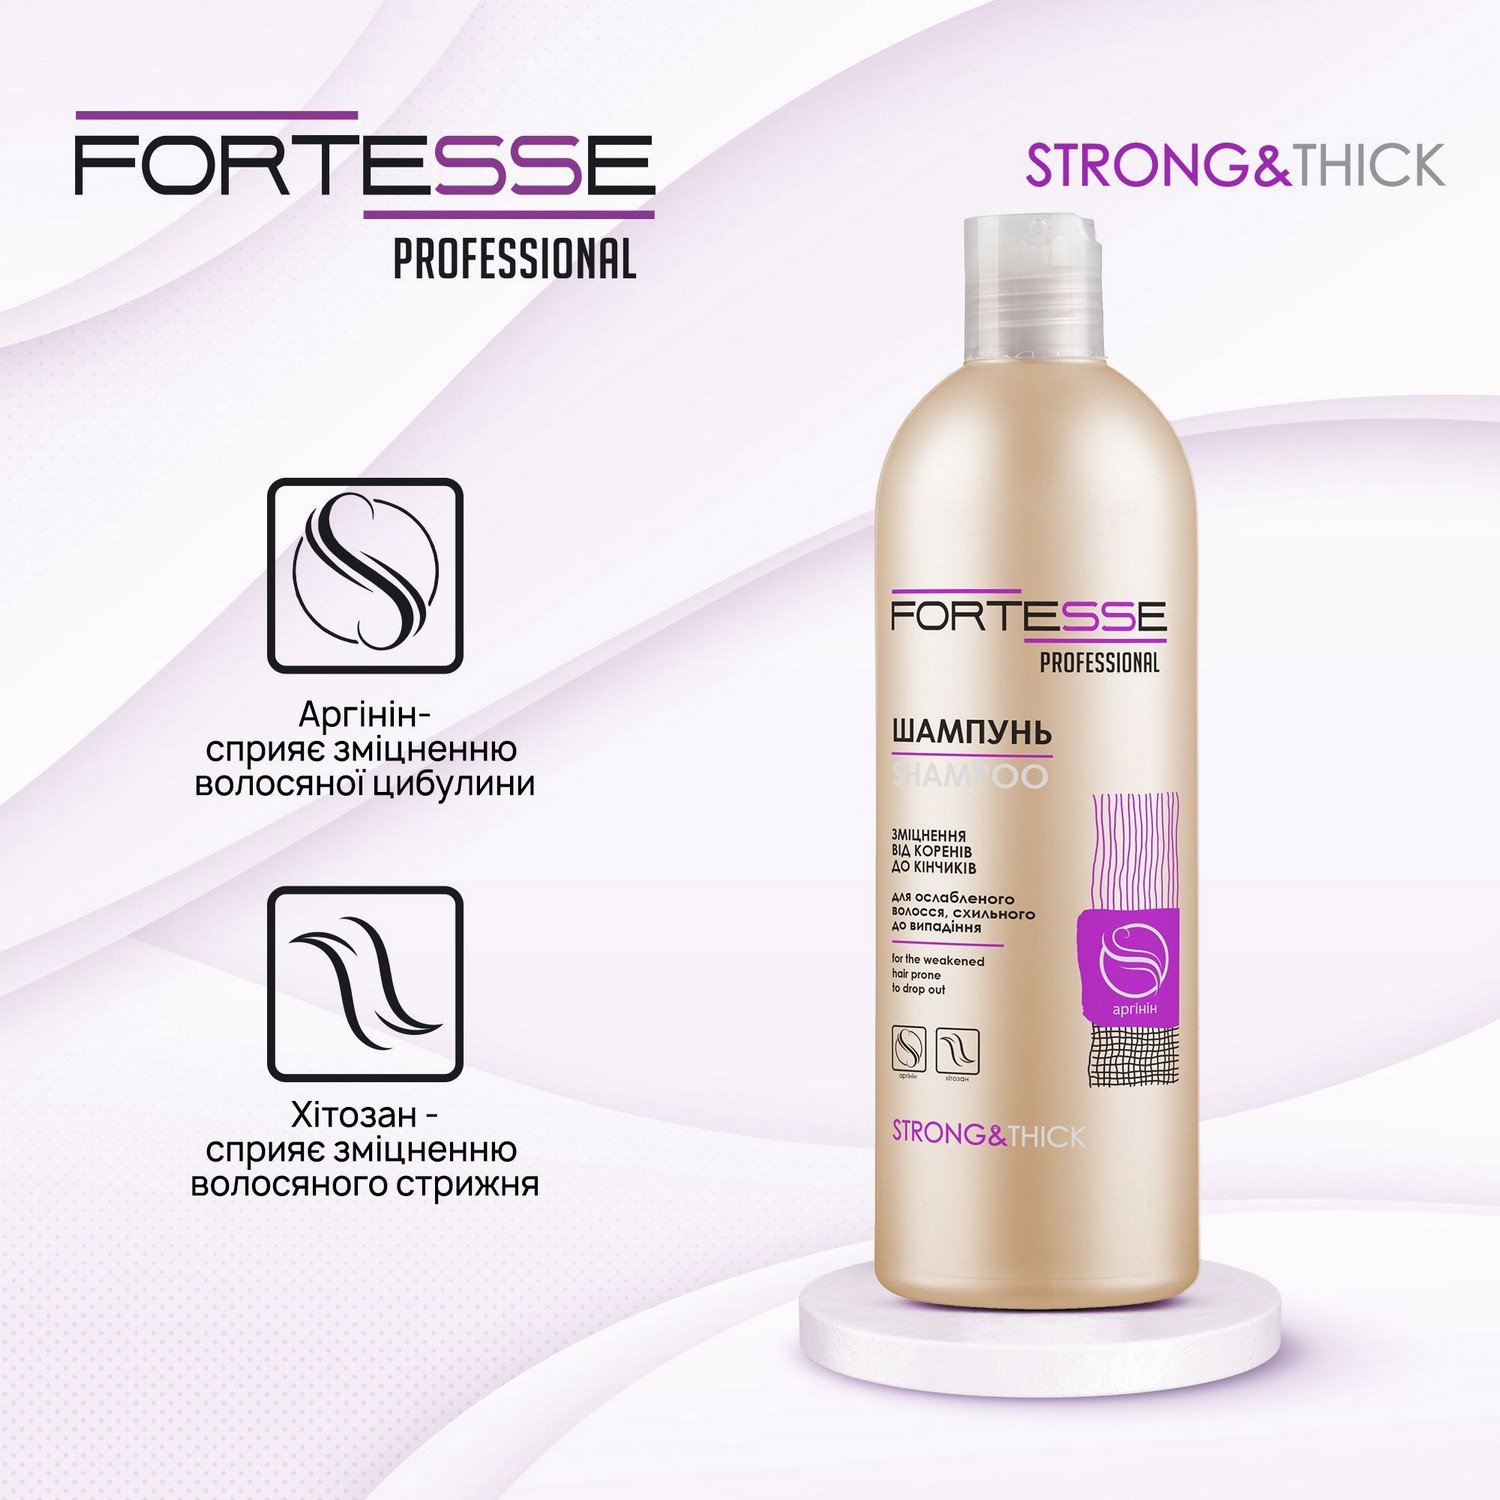 Укрепляющий шампунь Fortesse Professional Strong&Thick для ослабленных волос, склонных к выпадению, 400 мл - фото 5